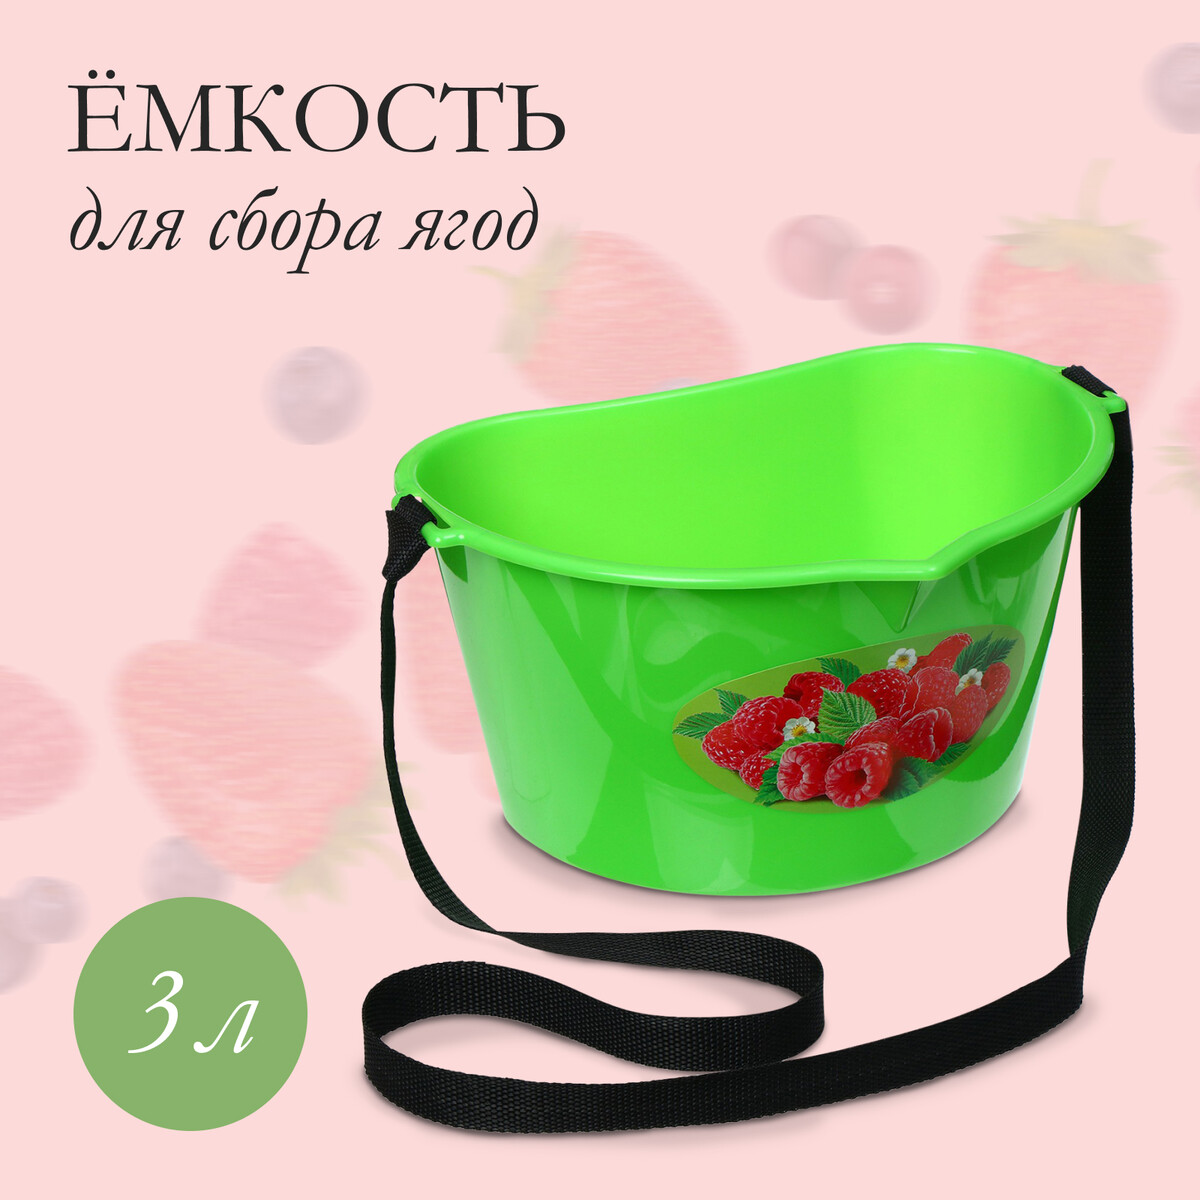 Ёмкость для сбора ягод, 3 л, приставка к пылесосу для сбора золы bort bac 18